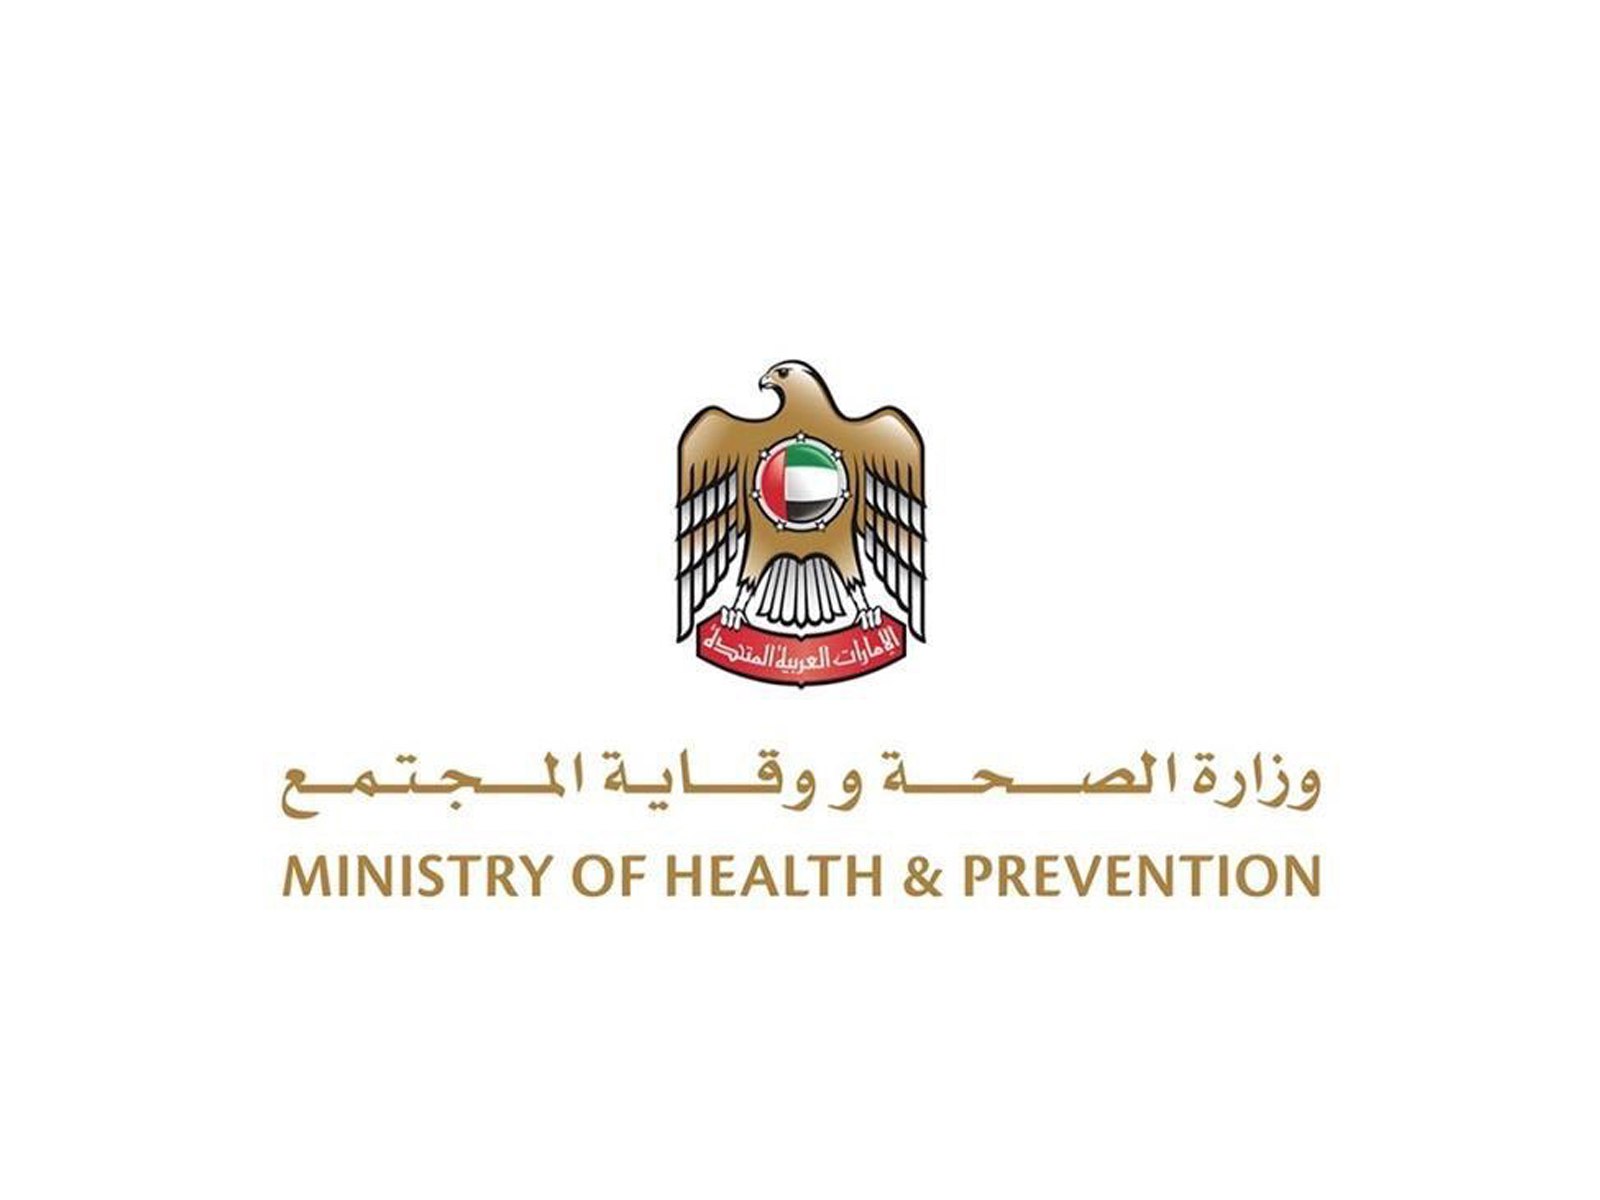 وكالة أنباء الإمارات - "الصحة" تجري 163,100 فحص ضمن خططها لتوسيع نطاق الفحوصات وتكشف عن 2,988 إصابة جديدة بفيروس كورونا المستجد و3,658 حالة شفاء و5 حالات وفاة خلال الساعات الـ 24 الماضية - اخبار الامارات ENN